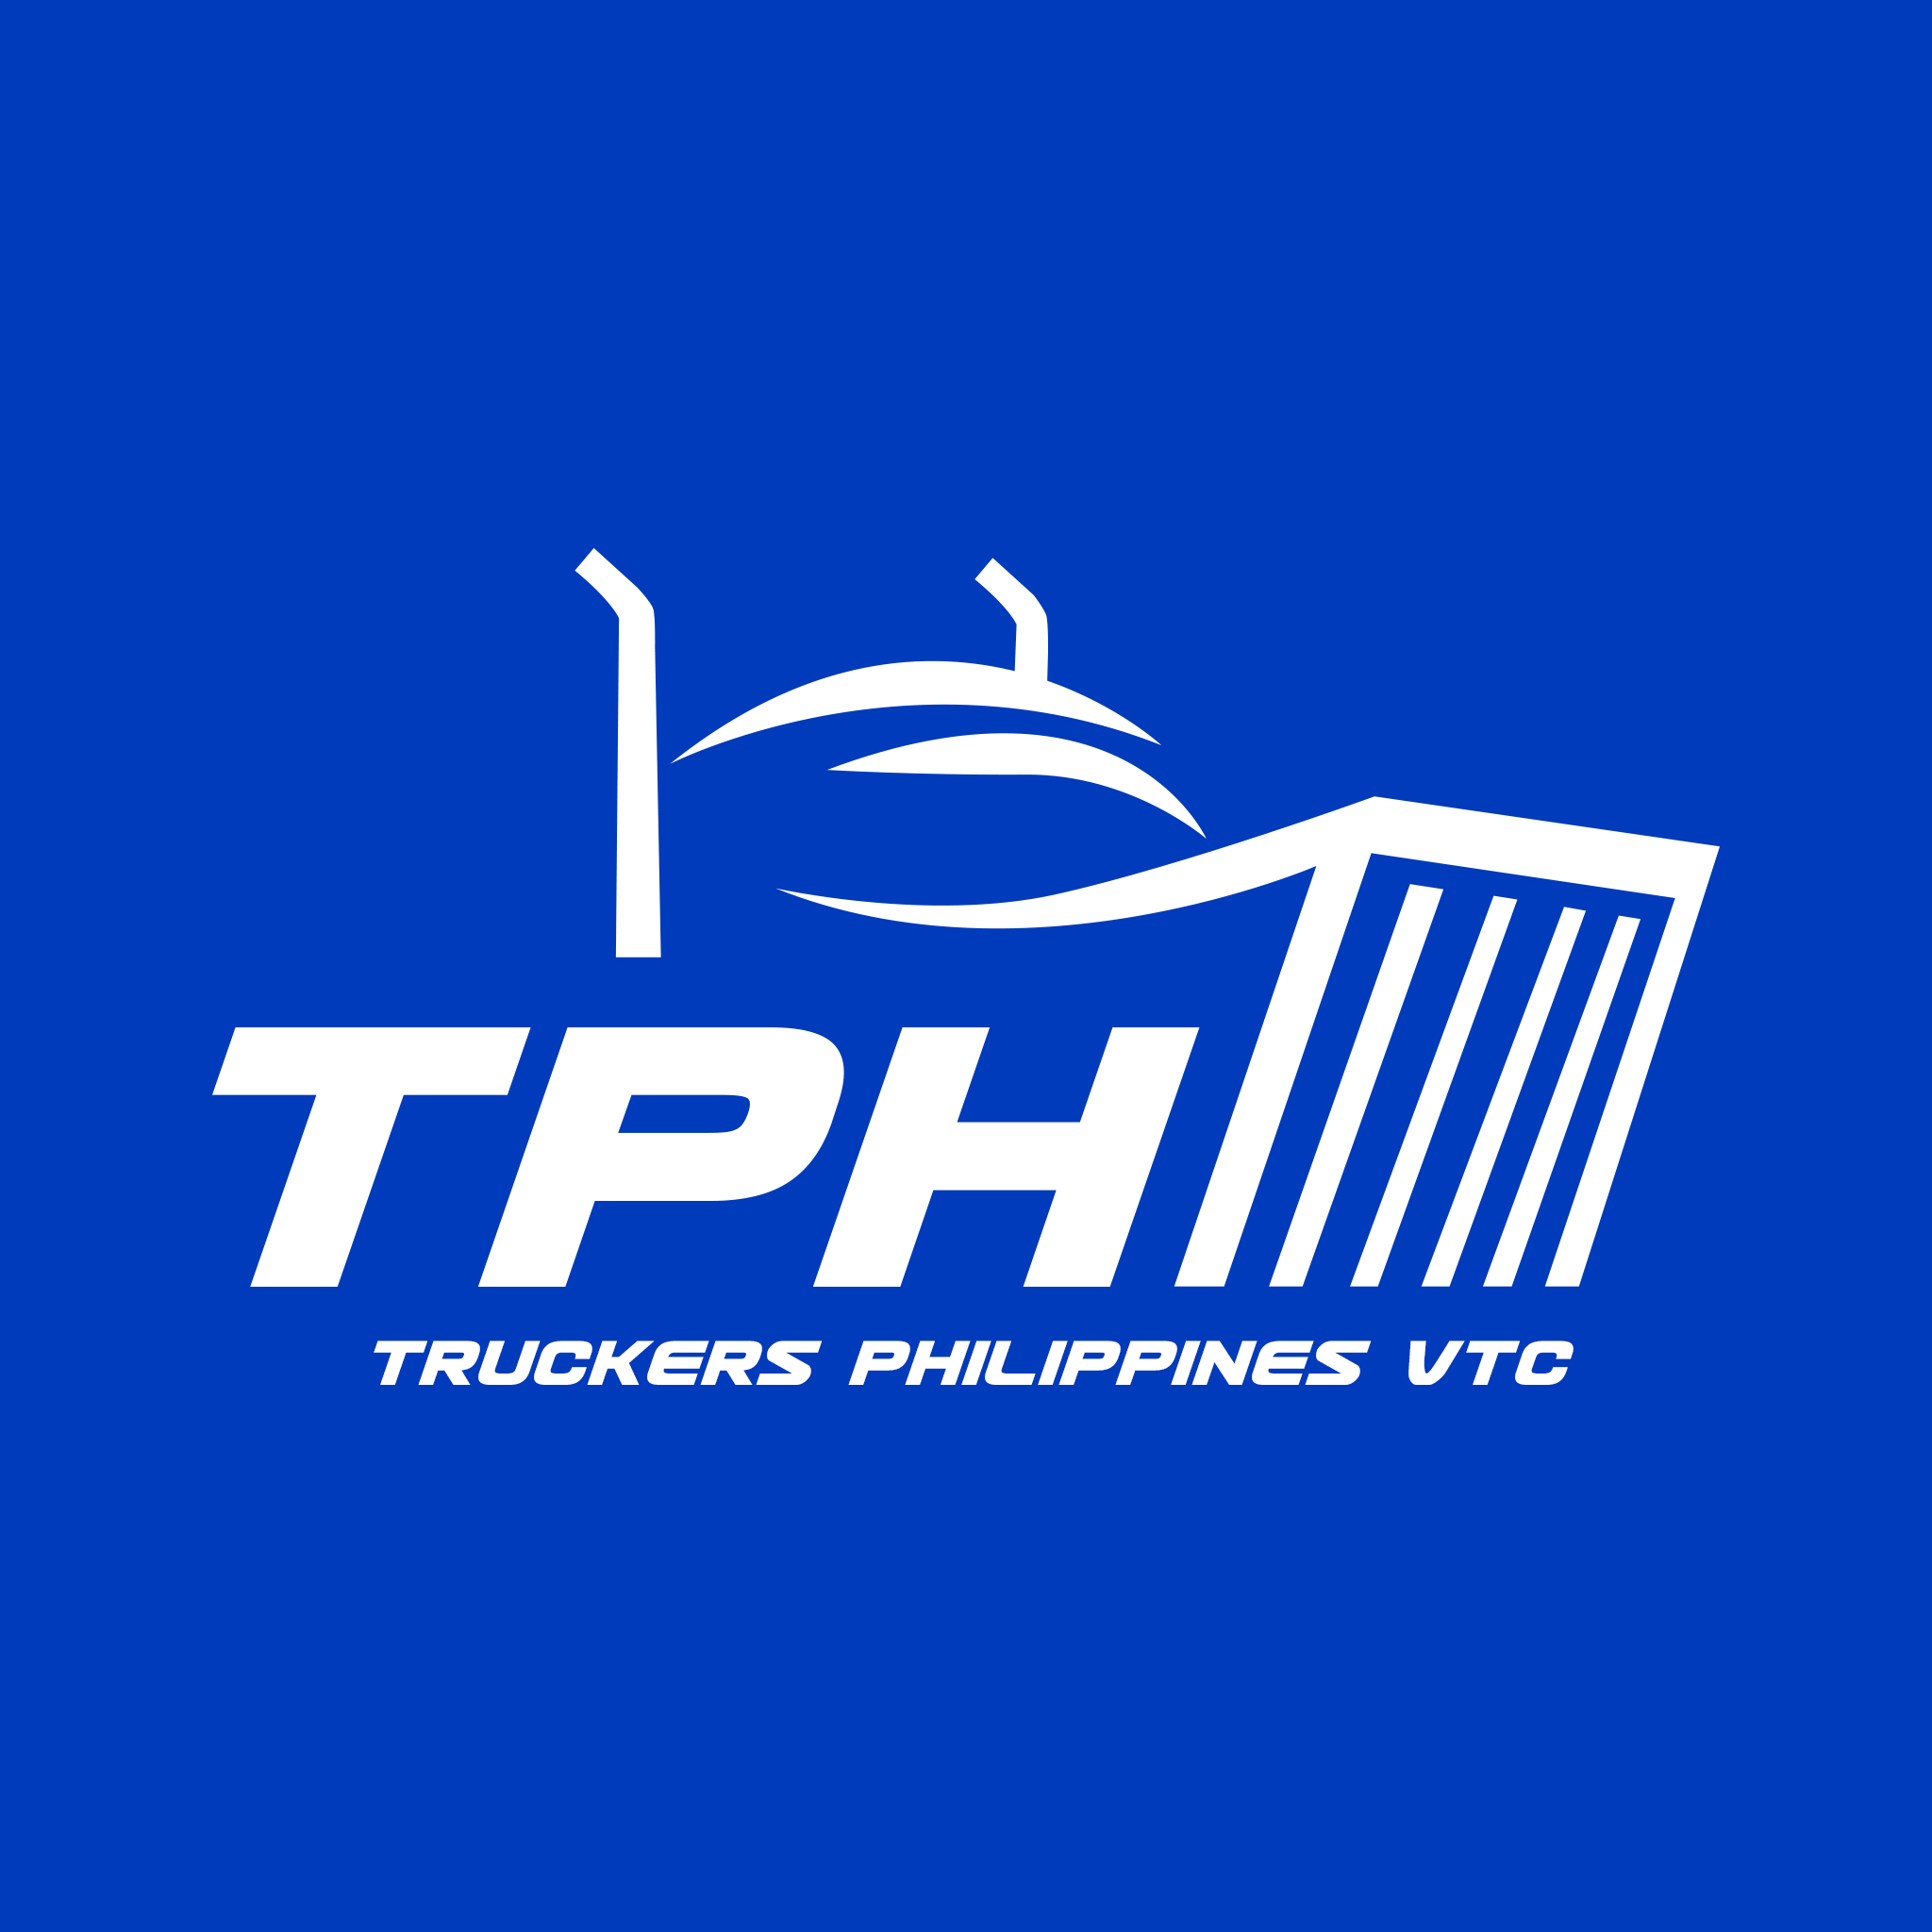 Truckers Philippines